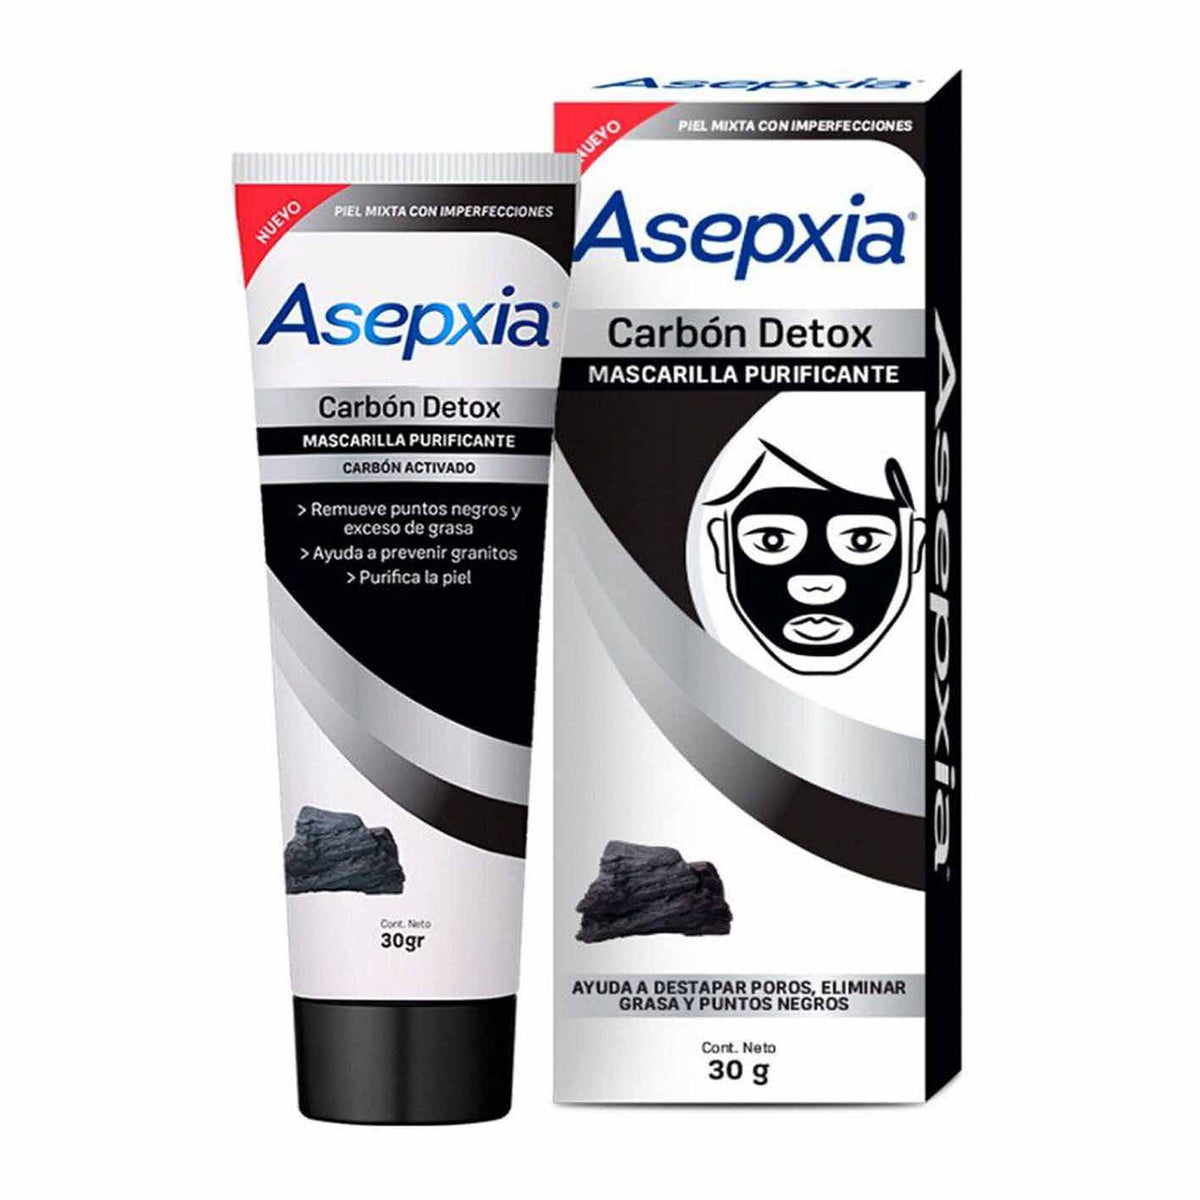 Asepxia Mascarilla Purificante Carbón Detox